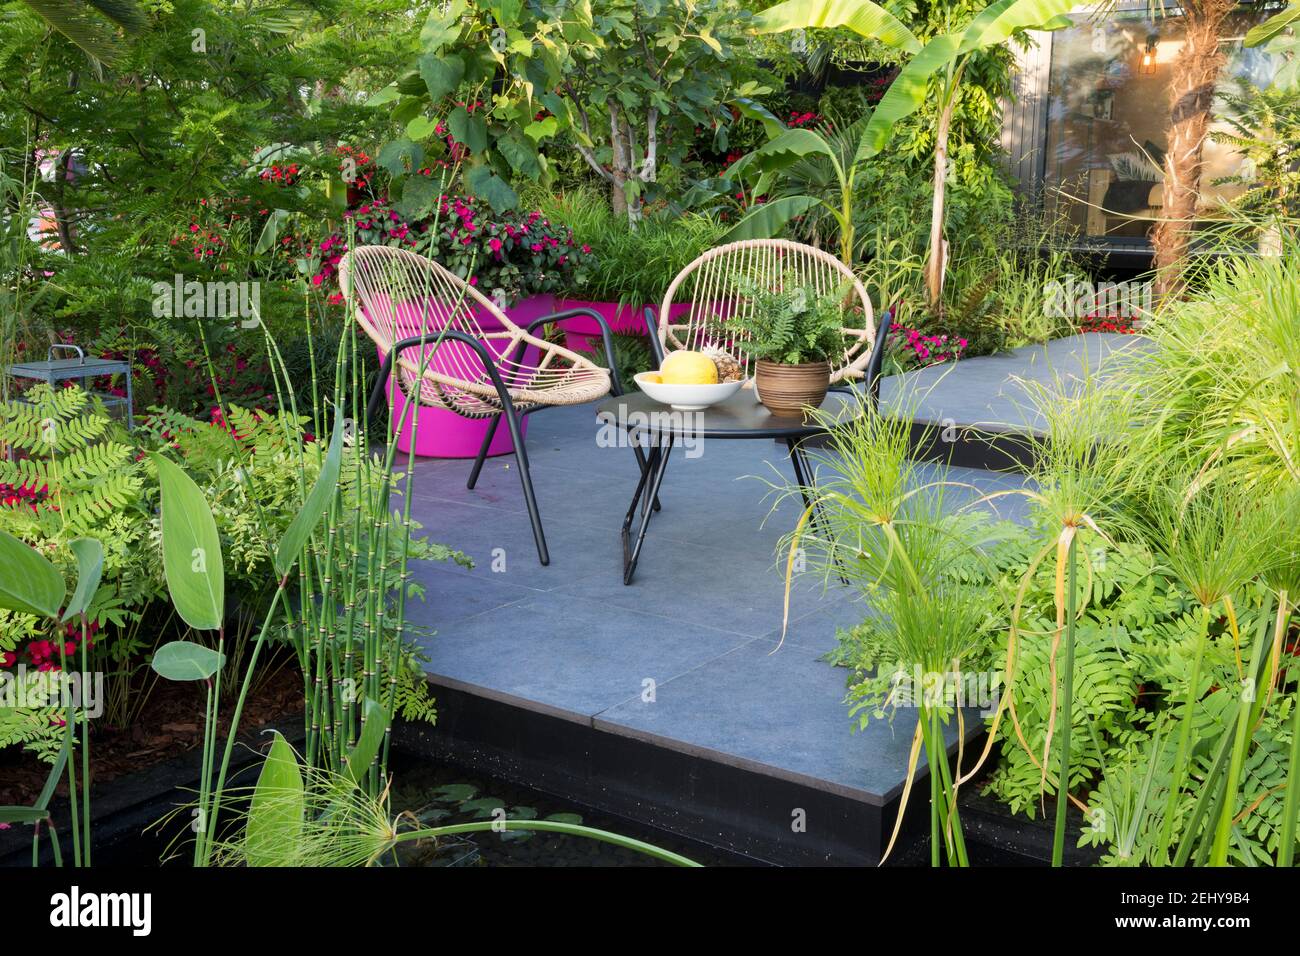 Tropischer Garten uk Rattan Stühle und Tisch auf dunklen Stein modernen Terrasse Pflaster mit geschäftigen Lizzie Imara in Grenzen Pampas Gras und Farne UK Stockfoto